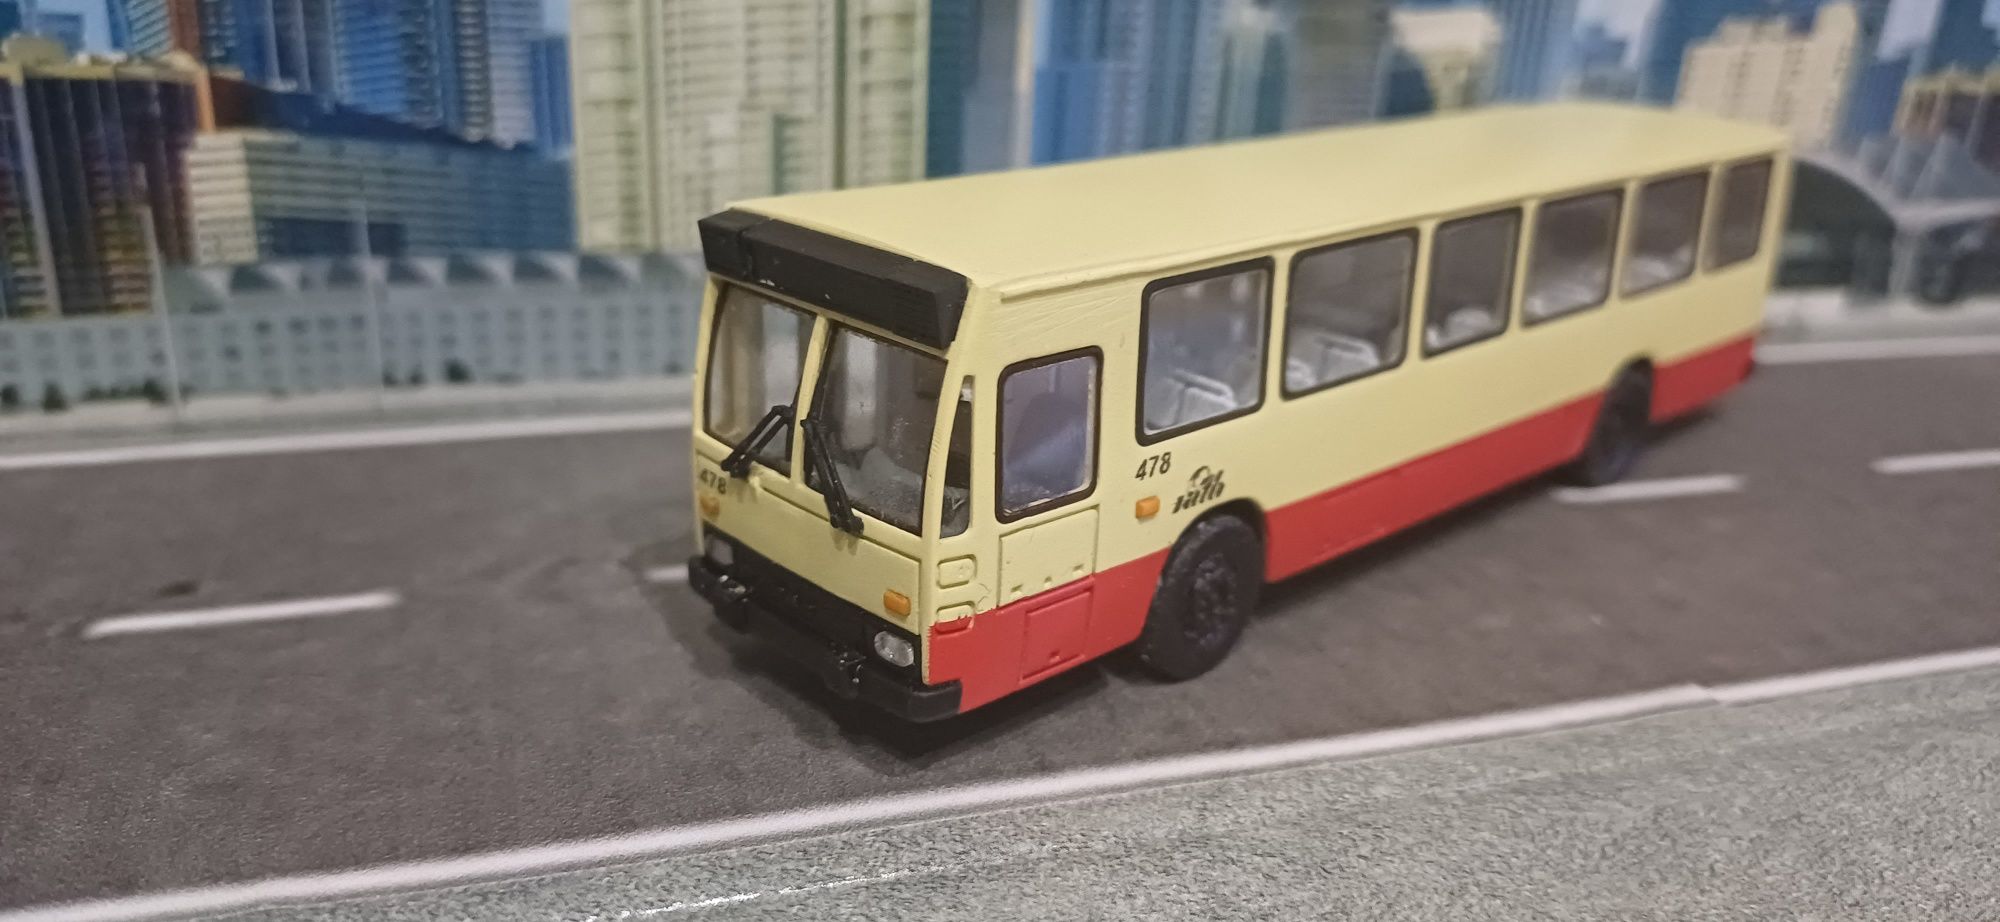 Macheta Autobuz Dac112 scara 1.87